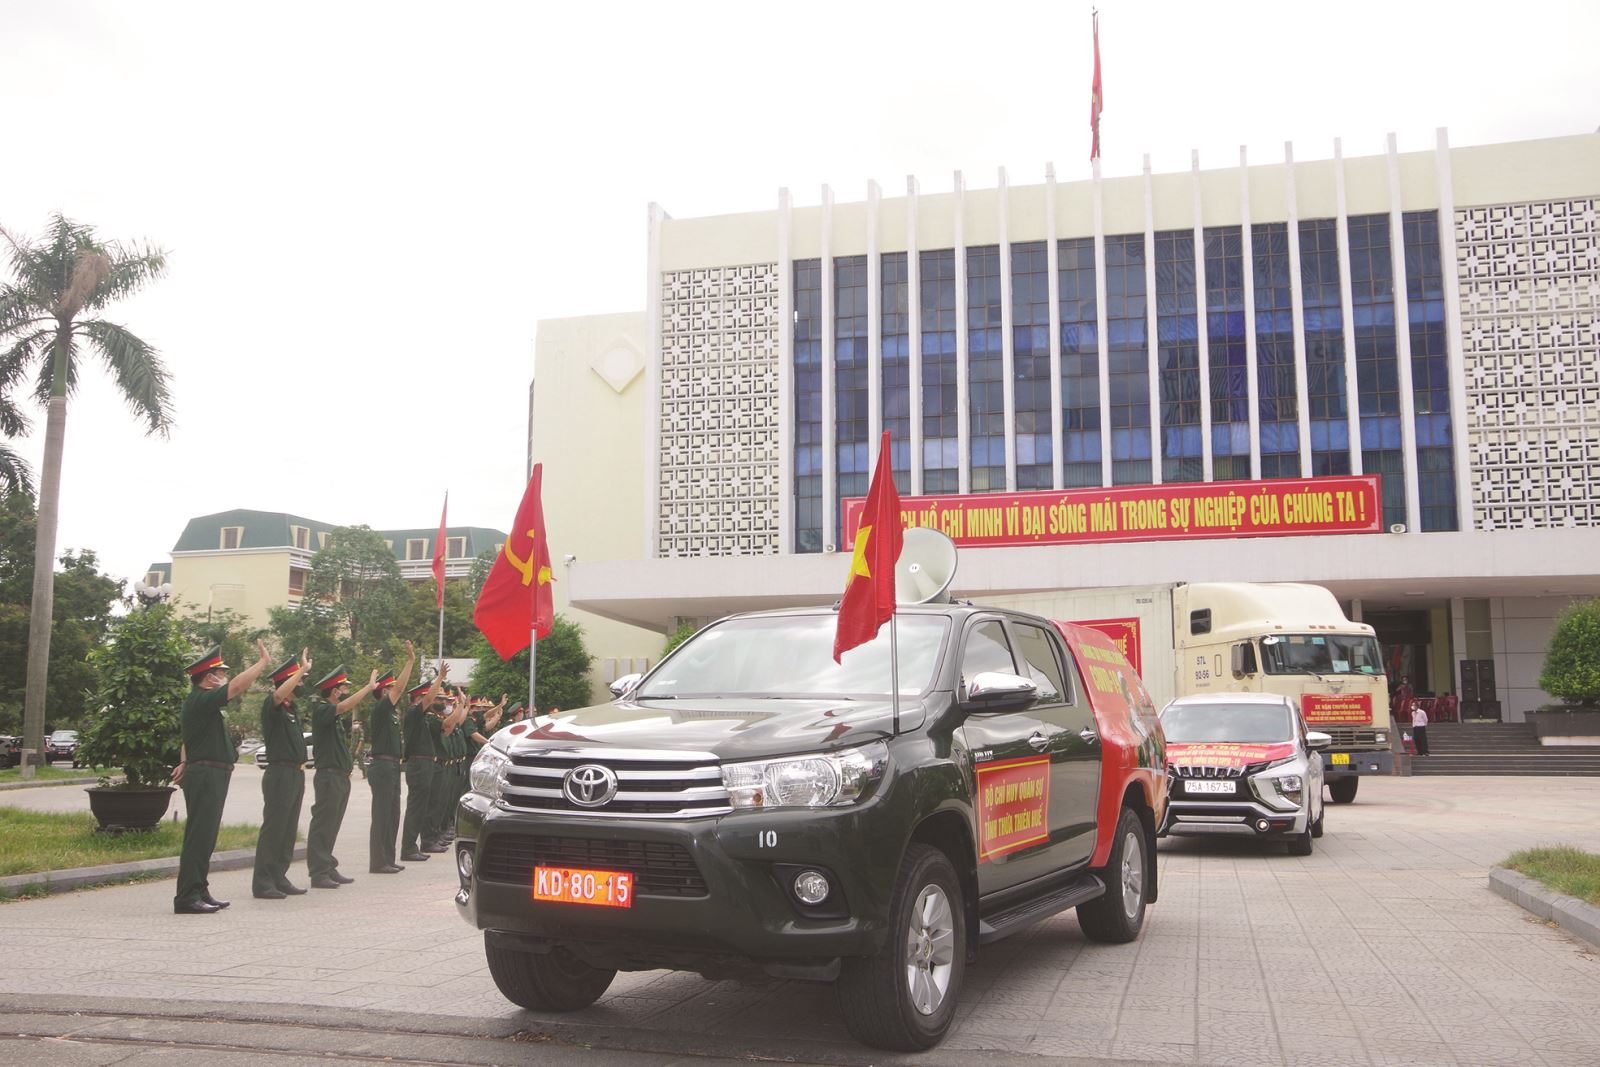 THỪA THIÊN HUẾ: Bộ Chỉ huy quân sự vận chuyển hàng hóa ủng hộ nhân dân và lực lượng vũ trang TP. HCM